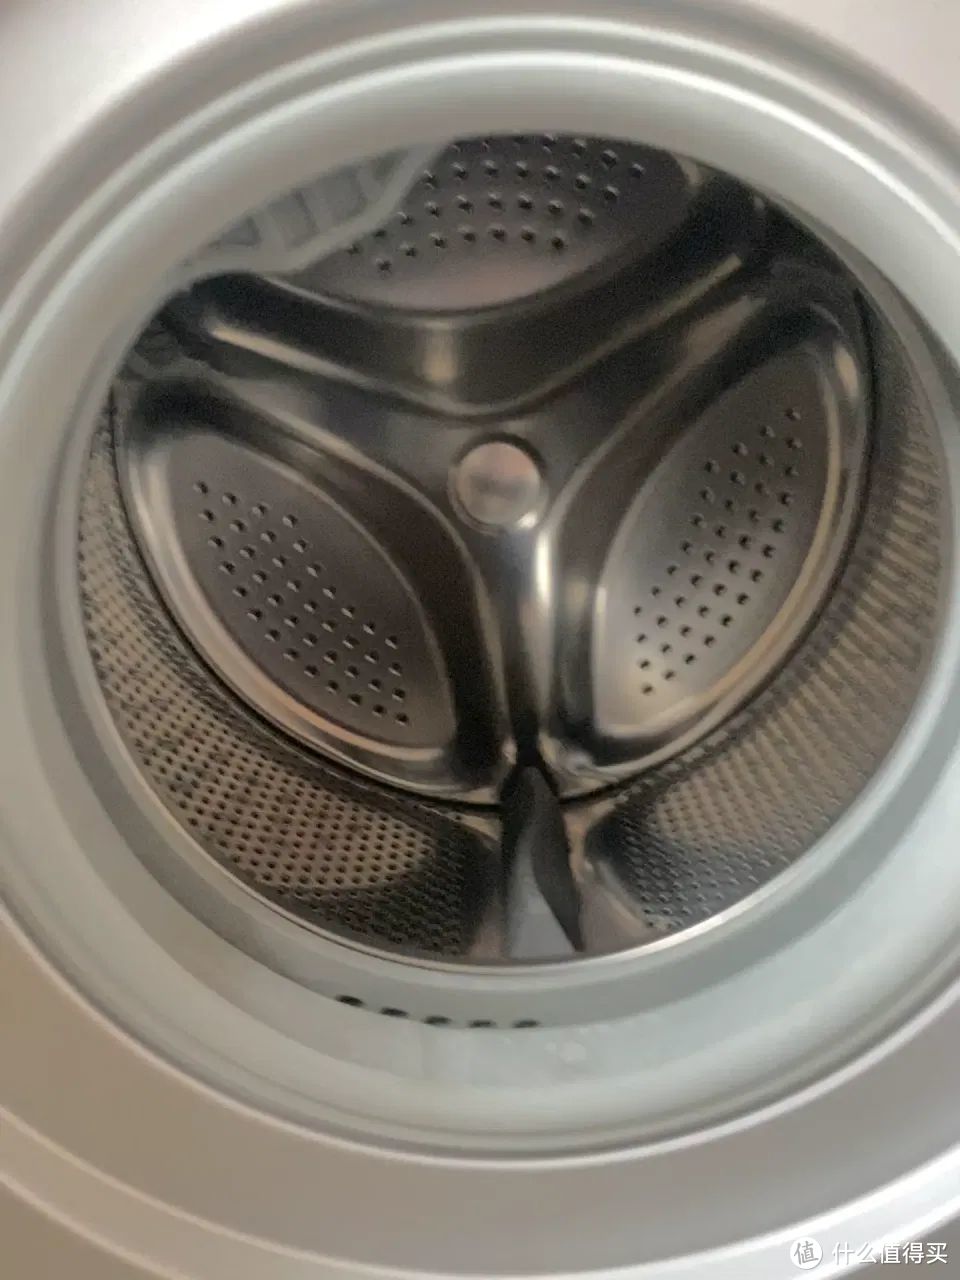 幸亏有人提醒：洗衣机“快洗”功能不能随便用，原来我一直用错了